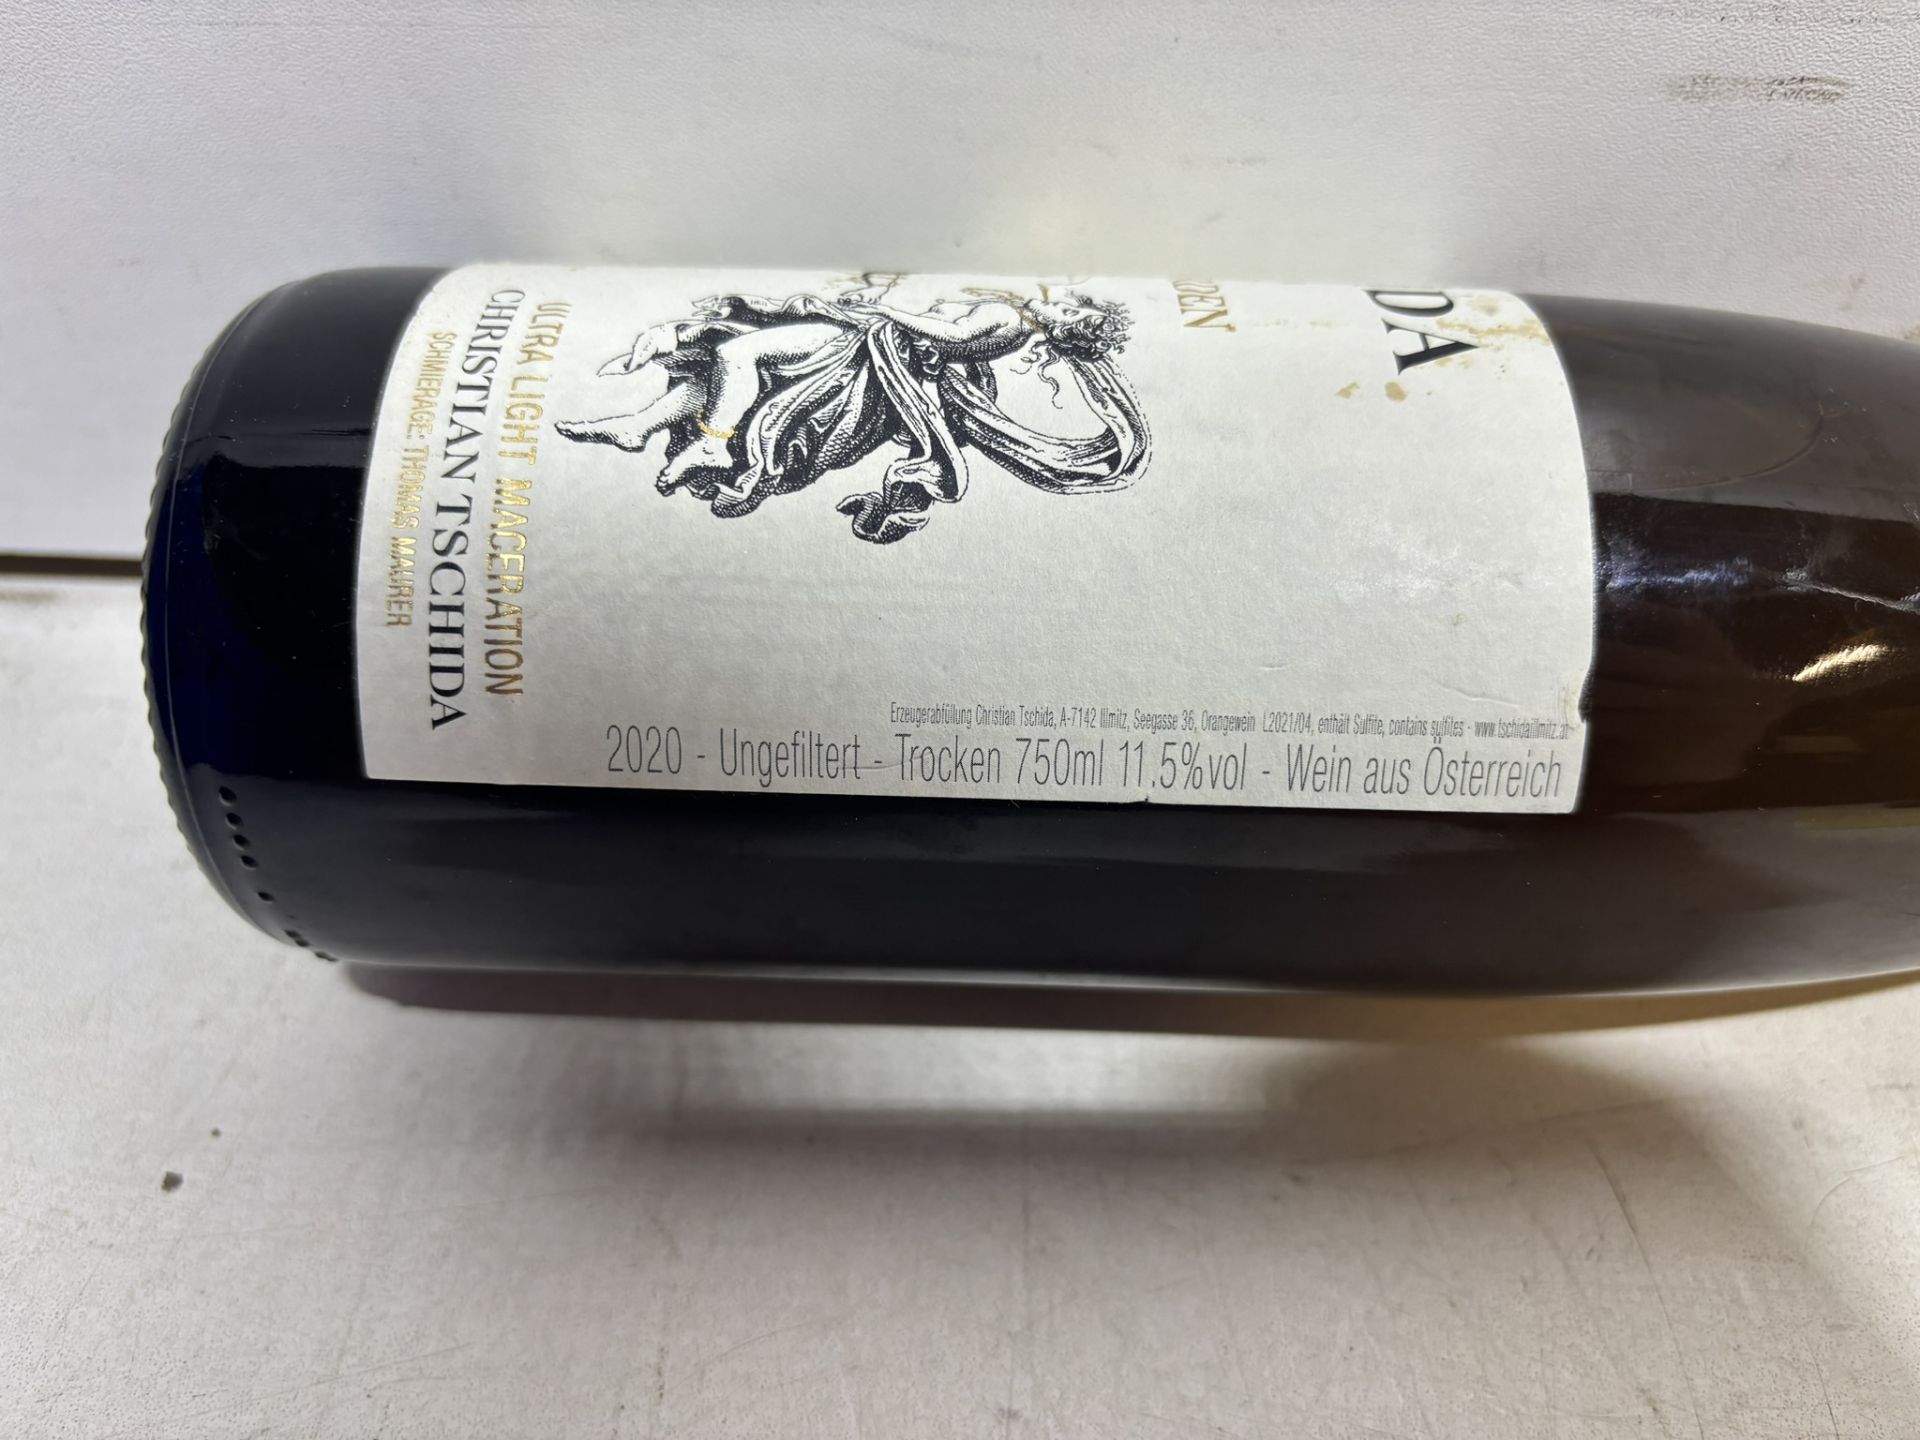 8 X Bottles Of Engel Auf Erden, Christian Tschida 2020 White Wine 75Cl - Image 3 of 4